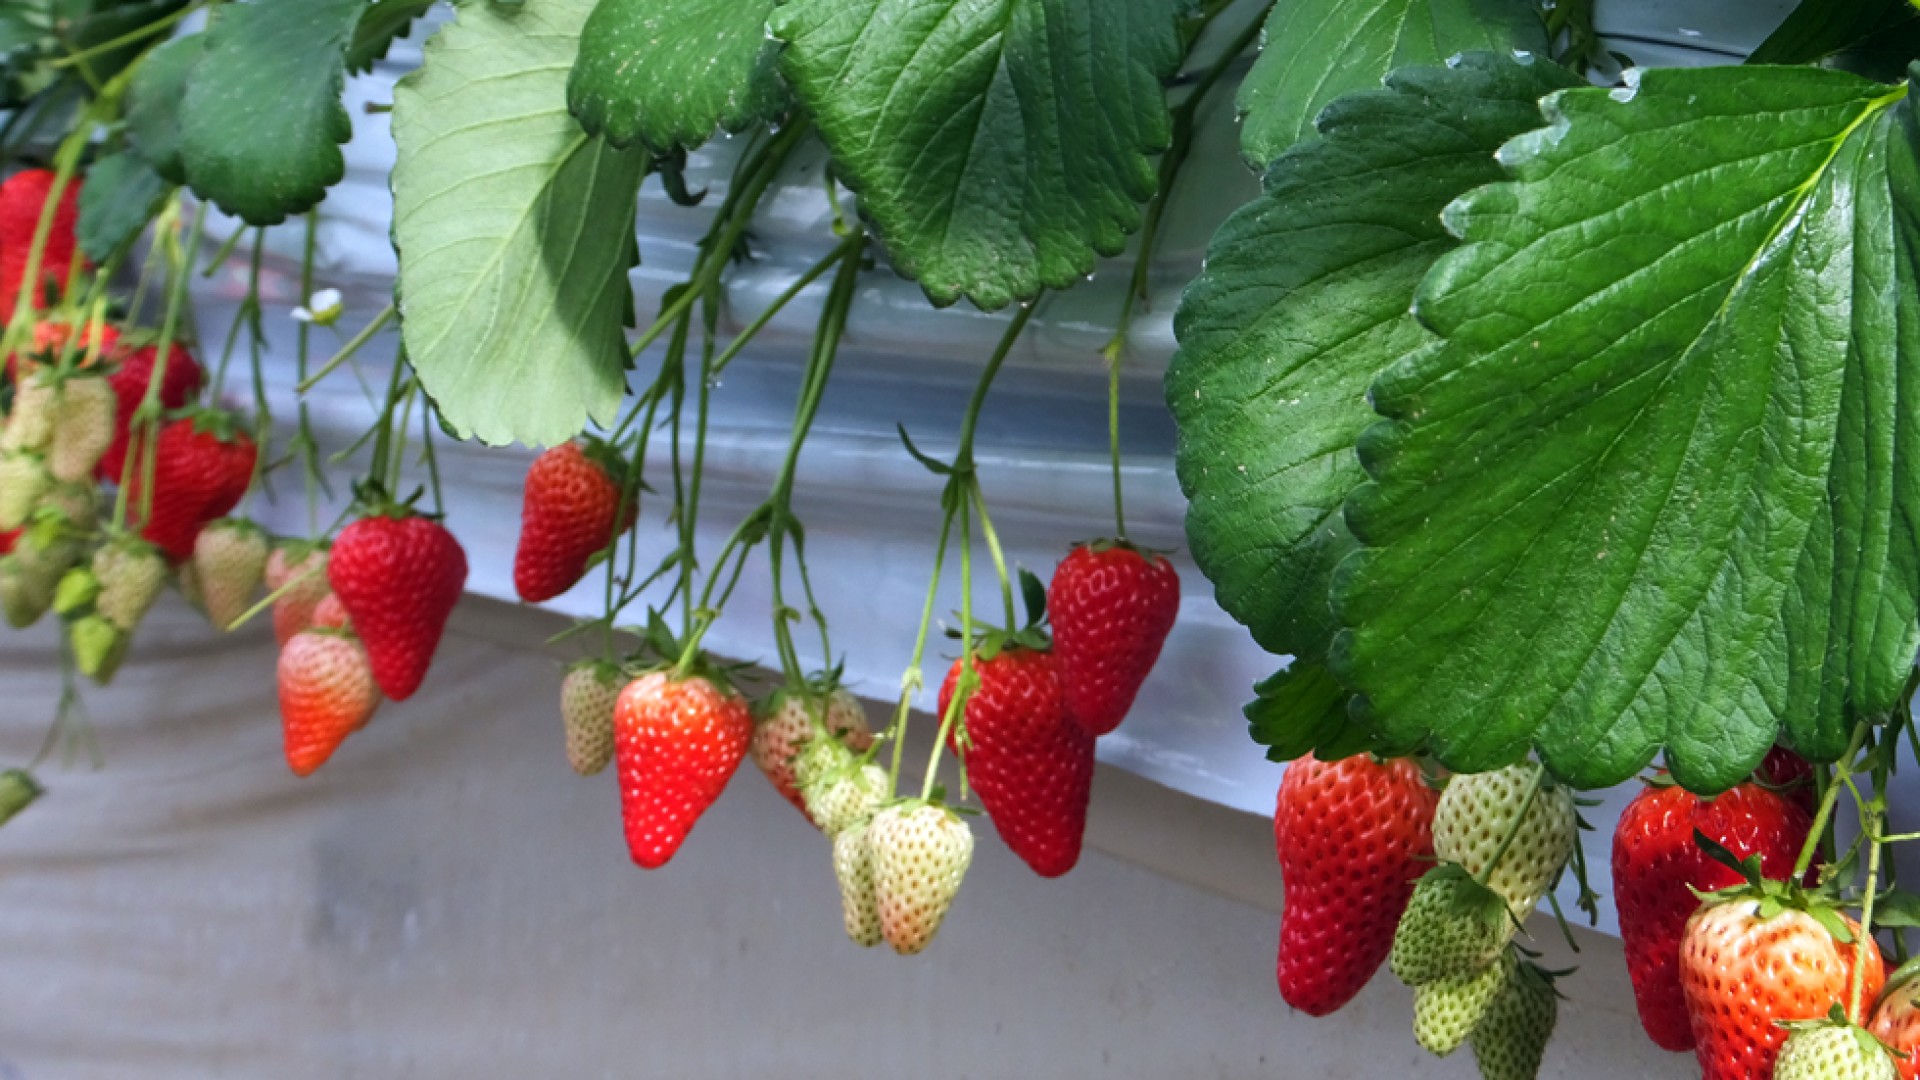 Motoki Farm (Strawberry Picking)